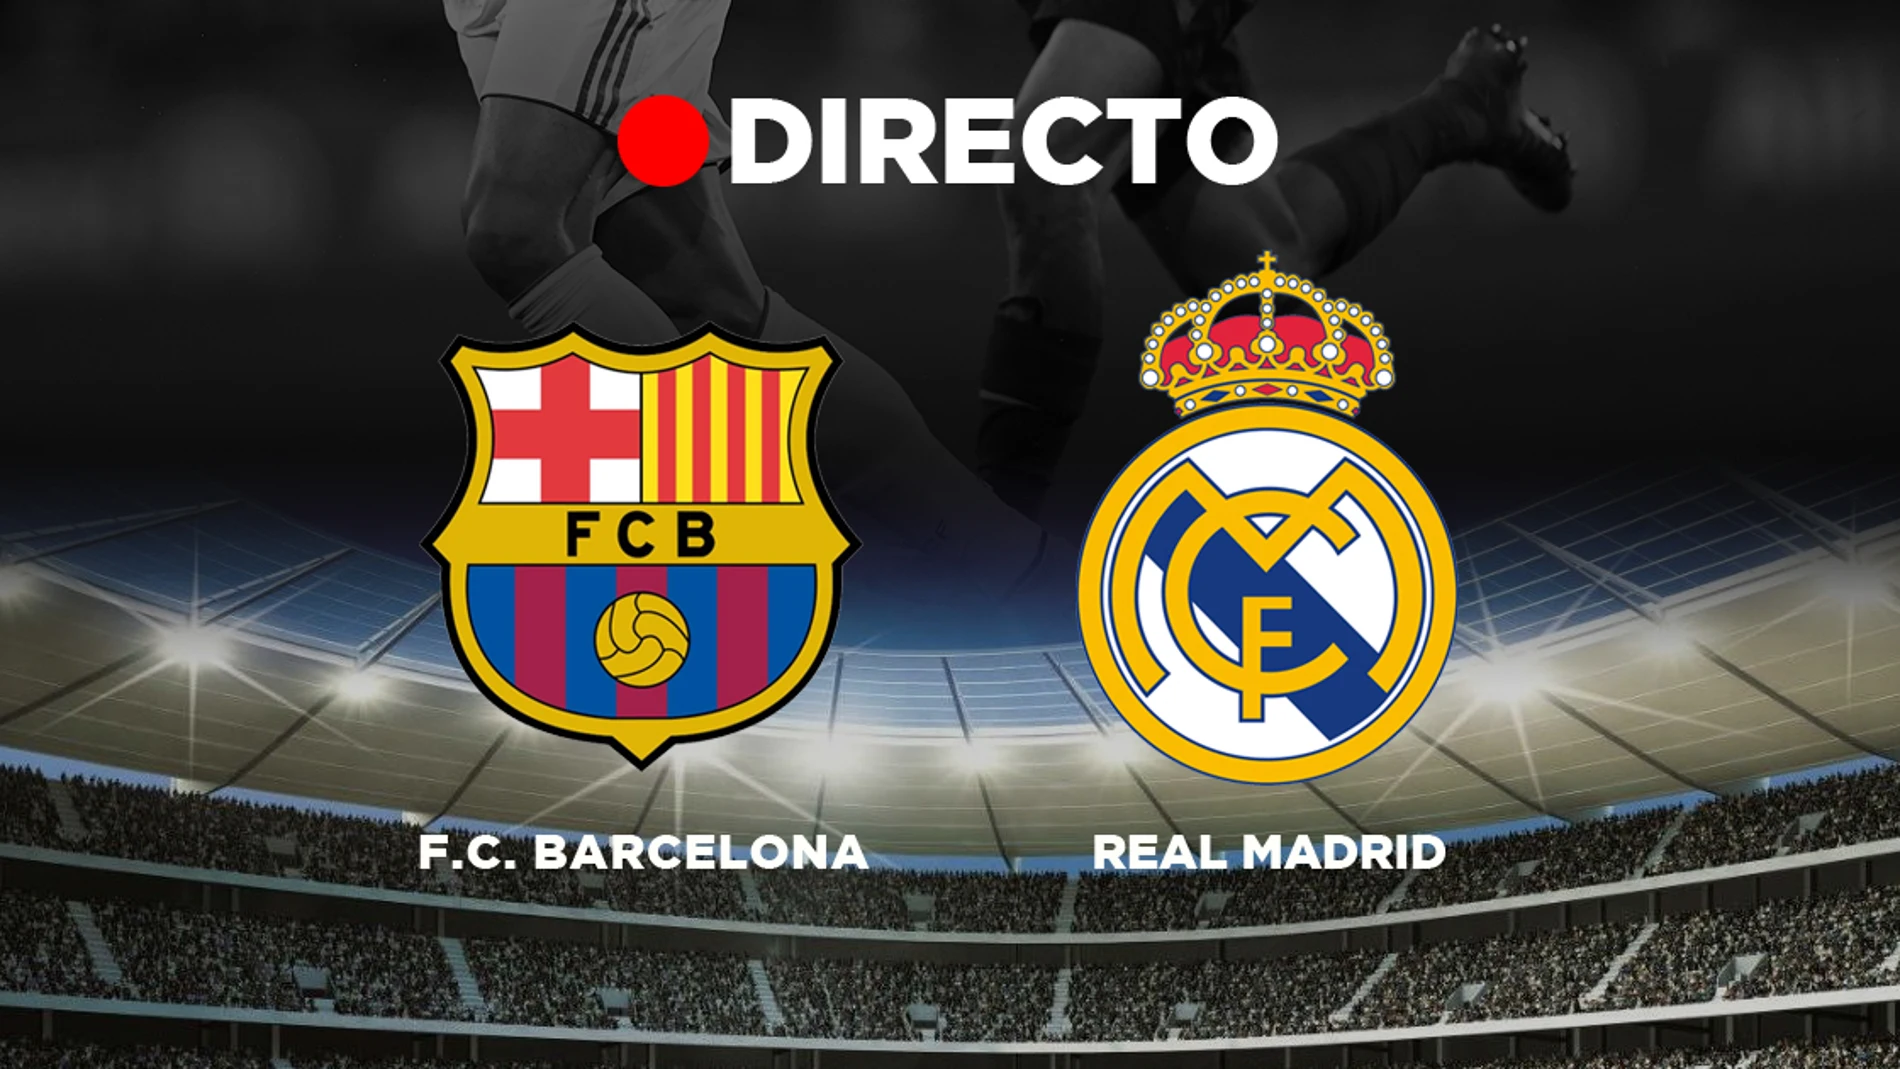 FC Barcelona Madrid: Partido de fútbol de Liga, resumen y resultado Clásico en directo